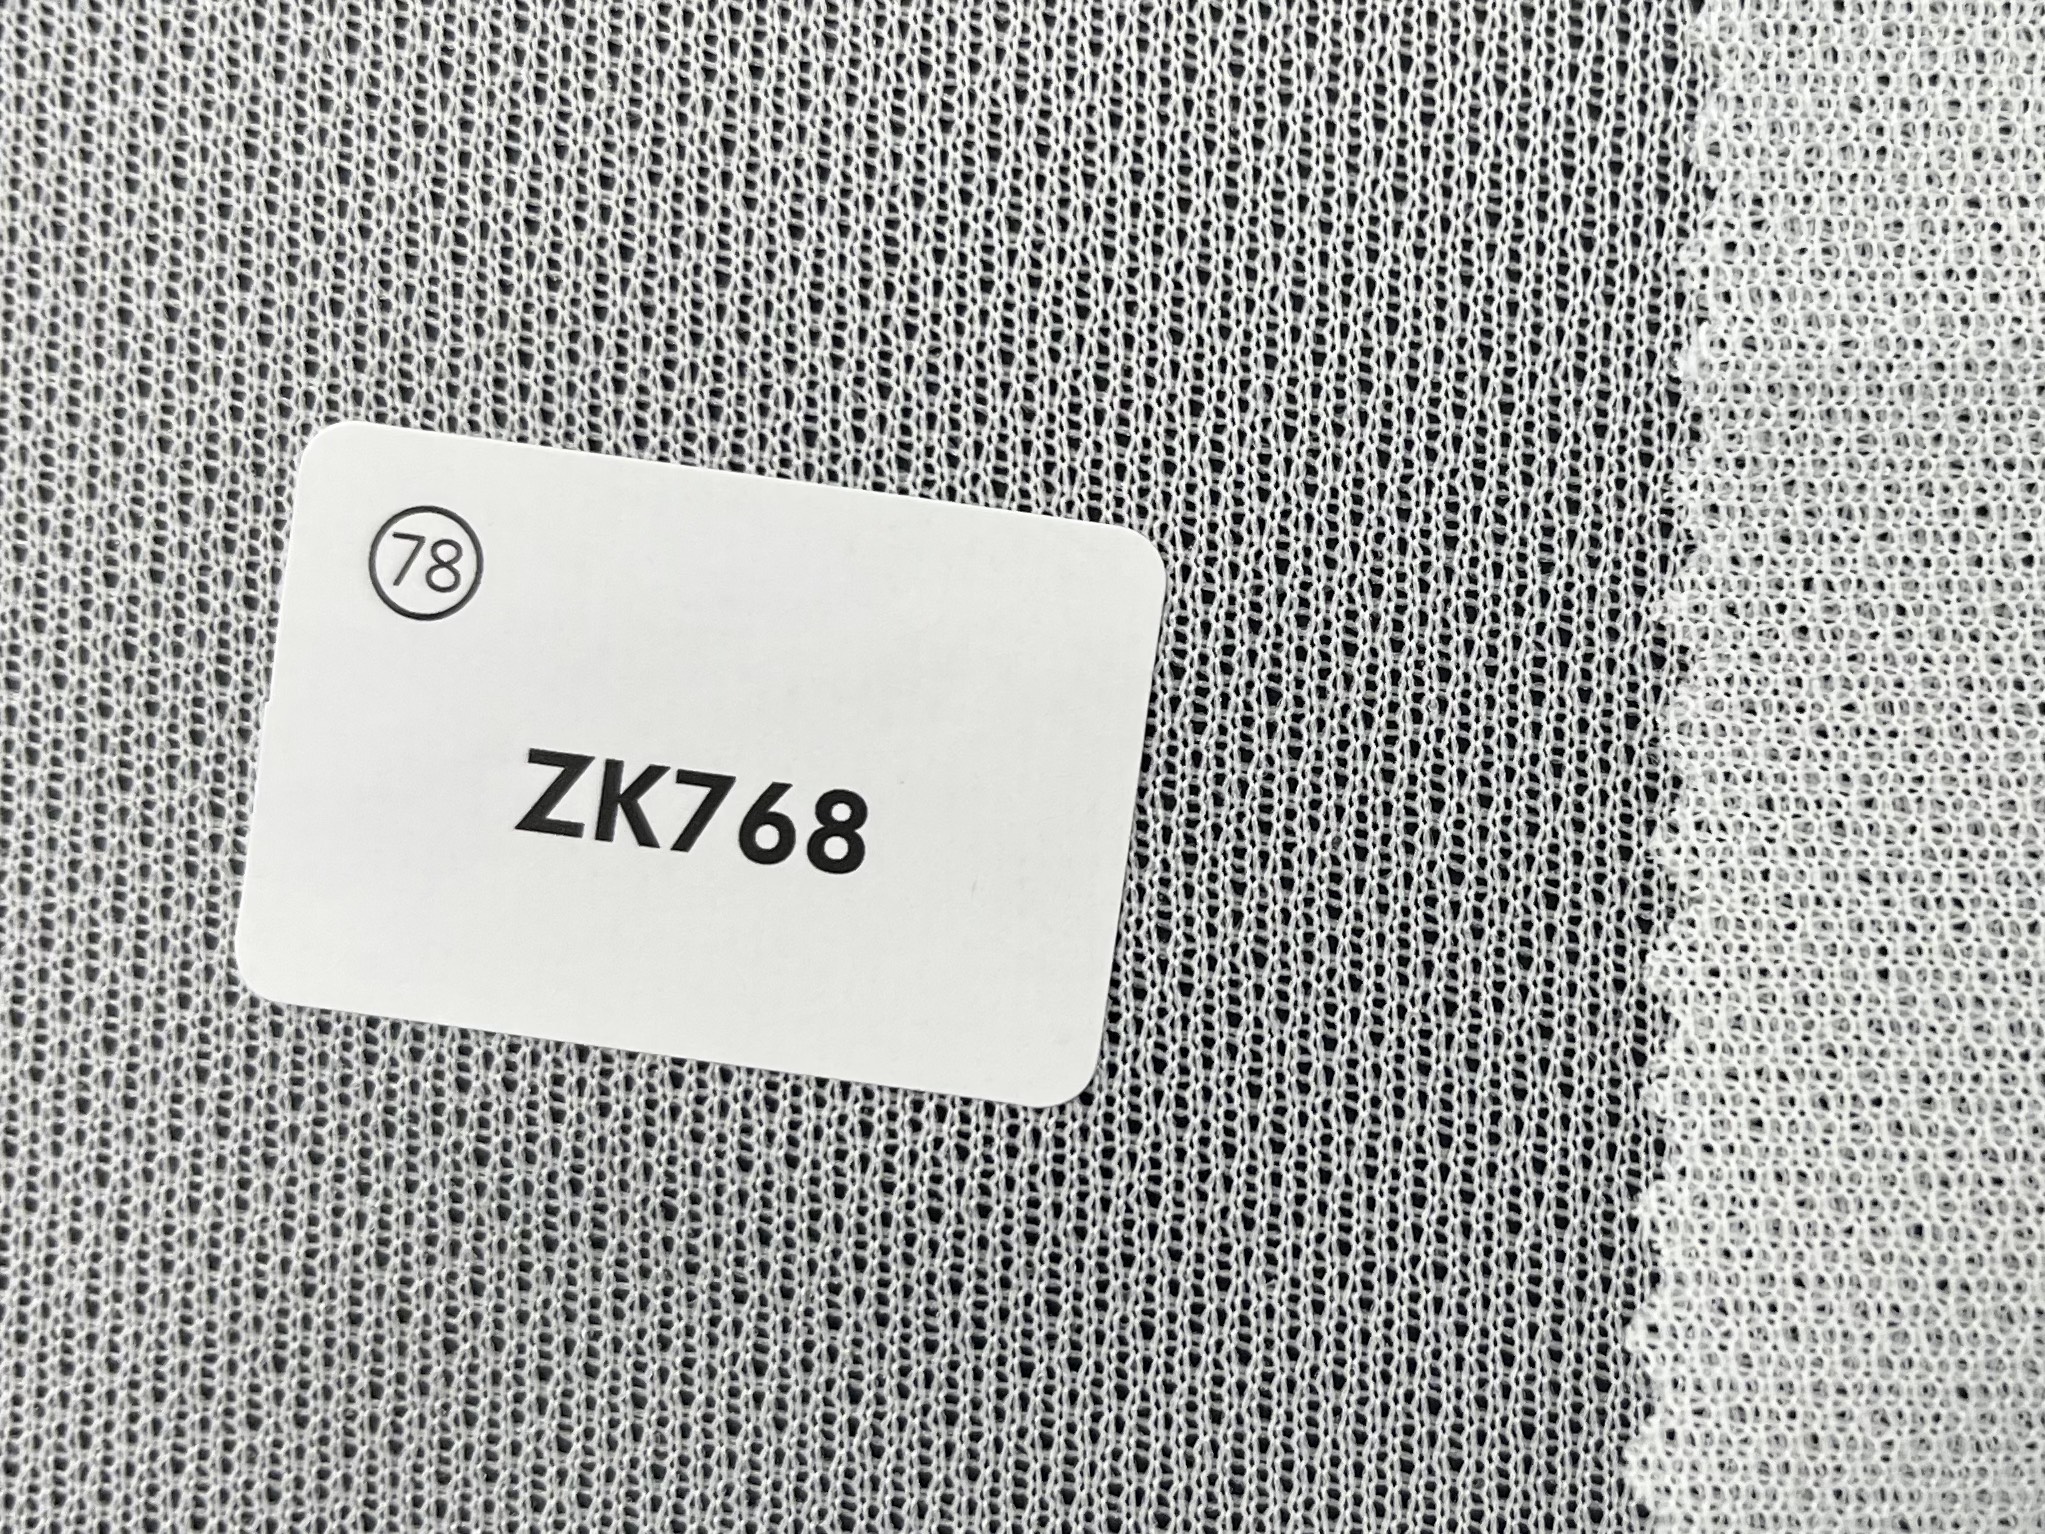 ZK768